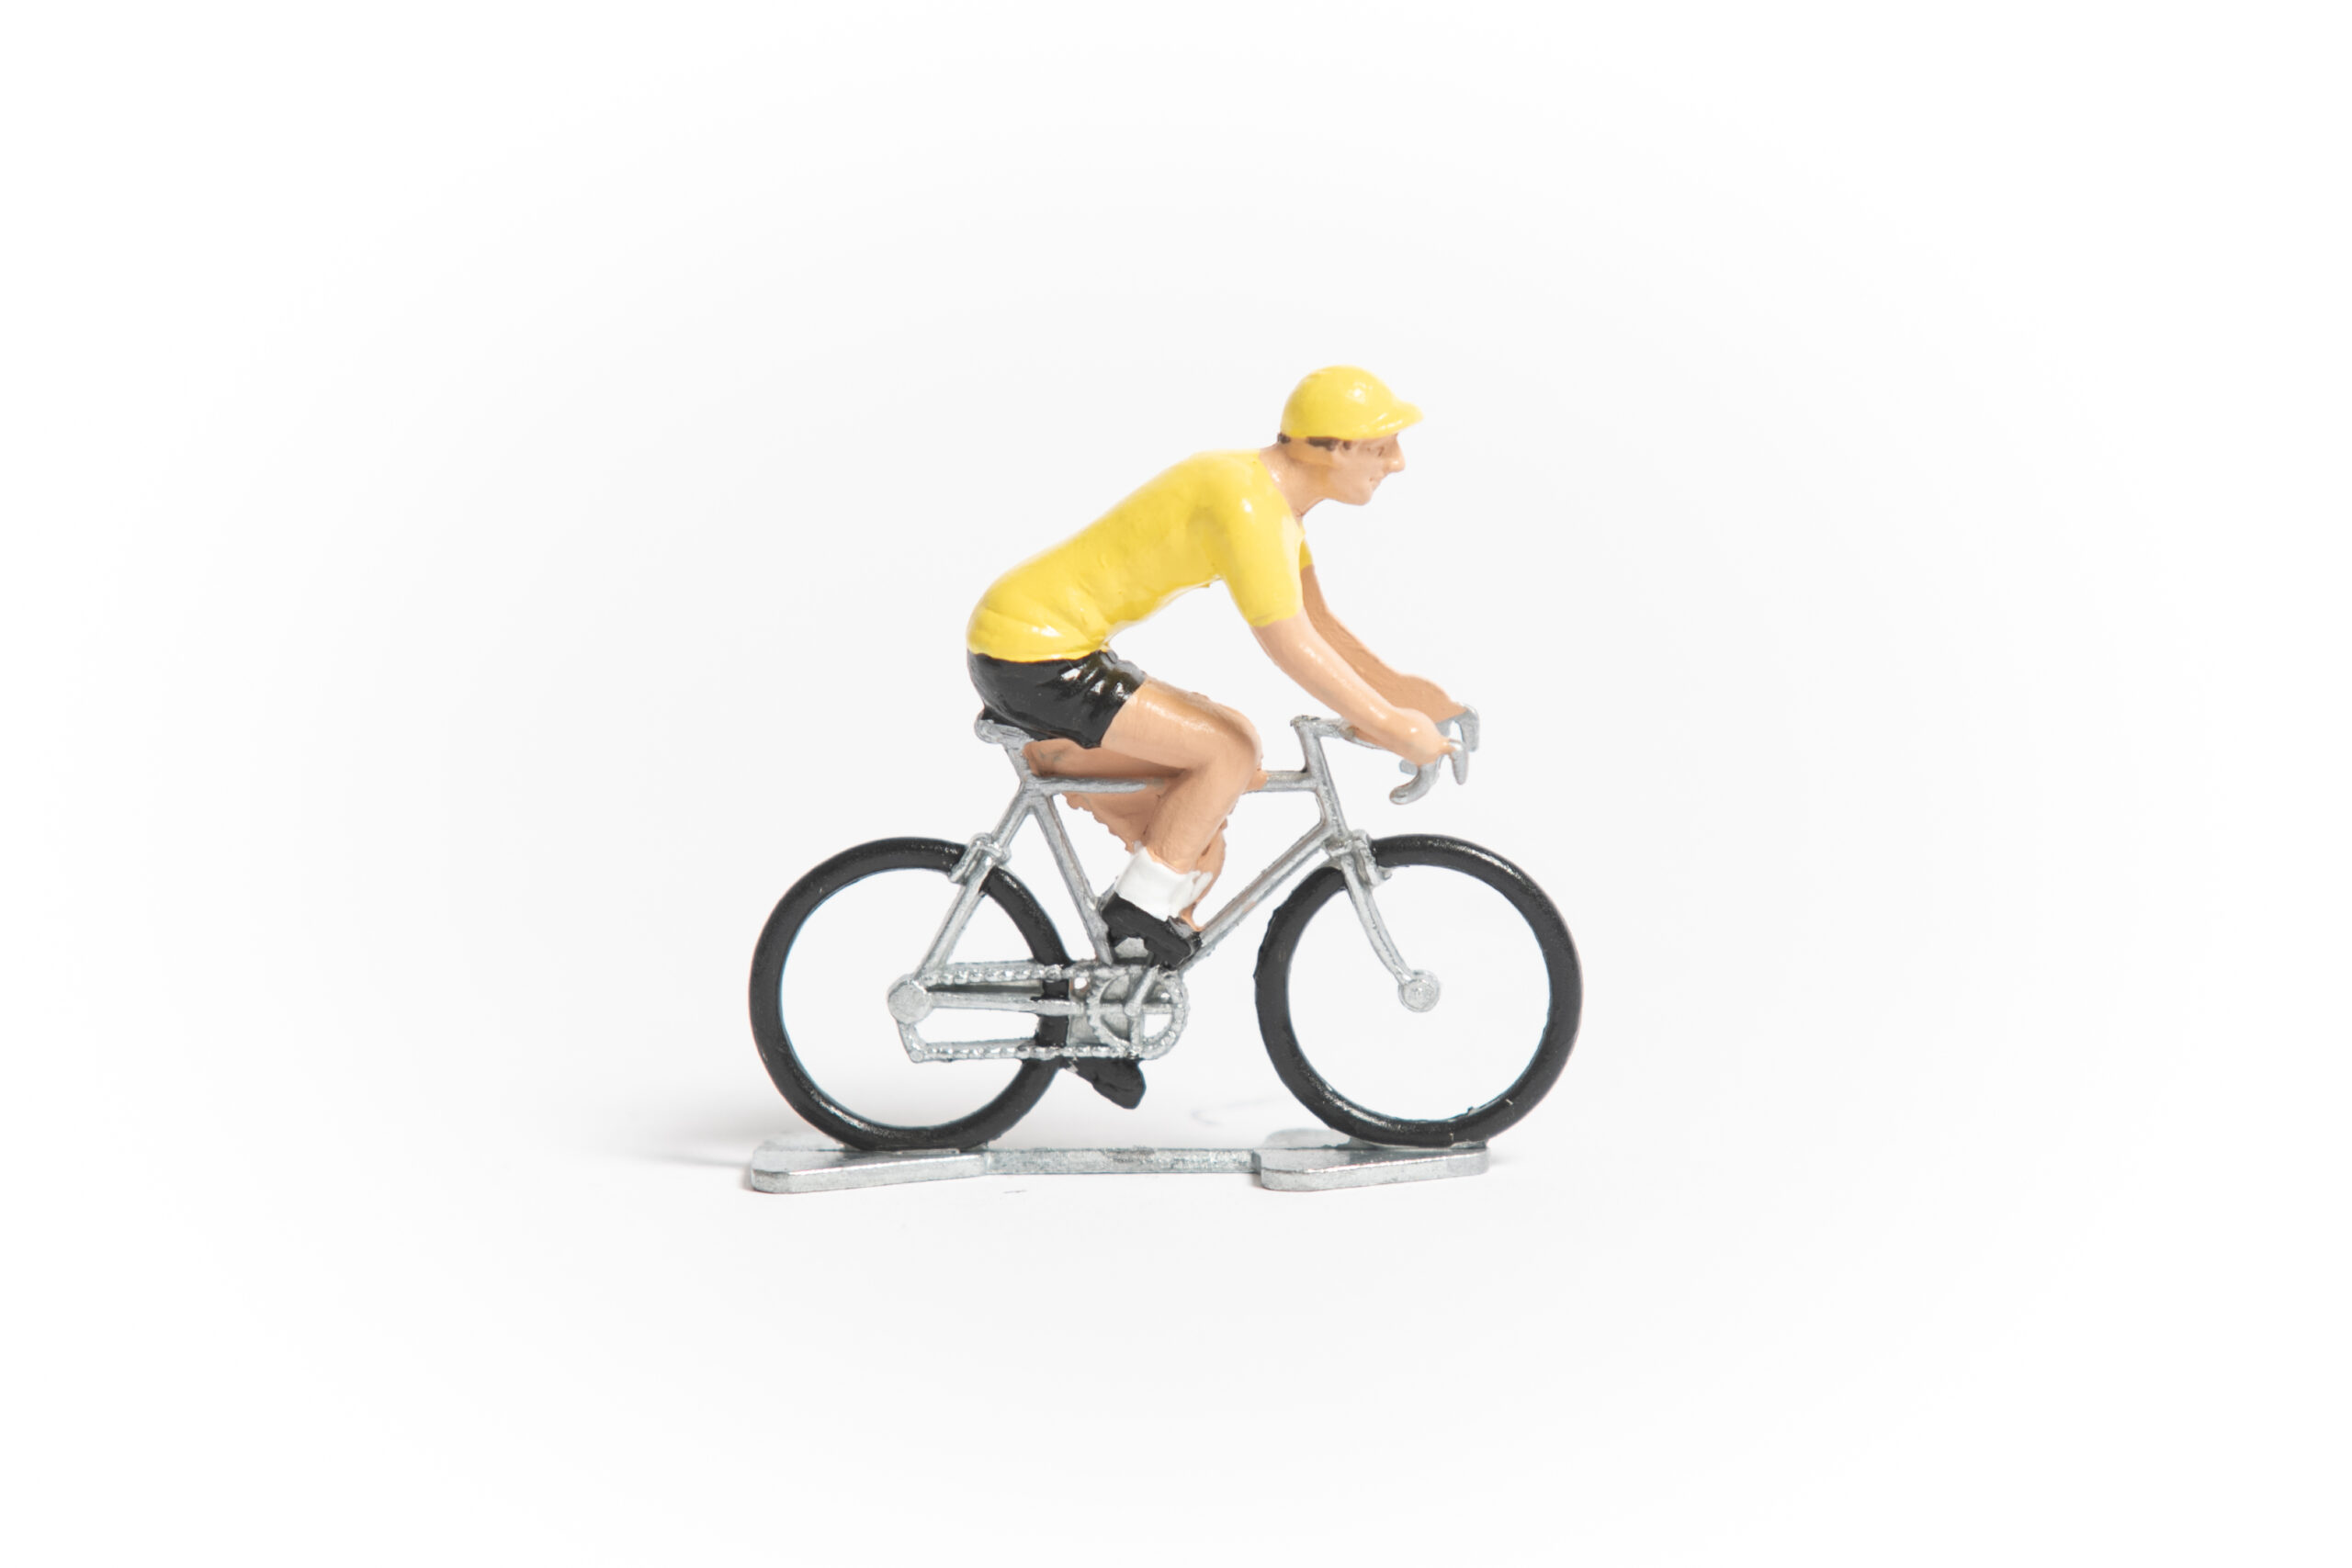 TDF Yellow Jersey mini cyclist figurine